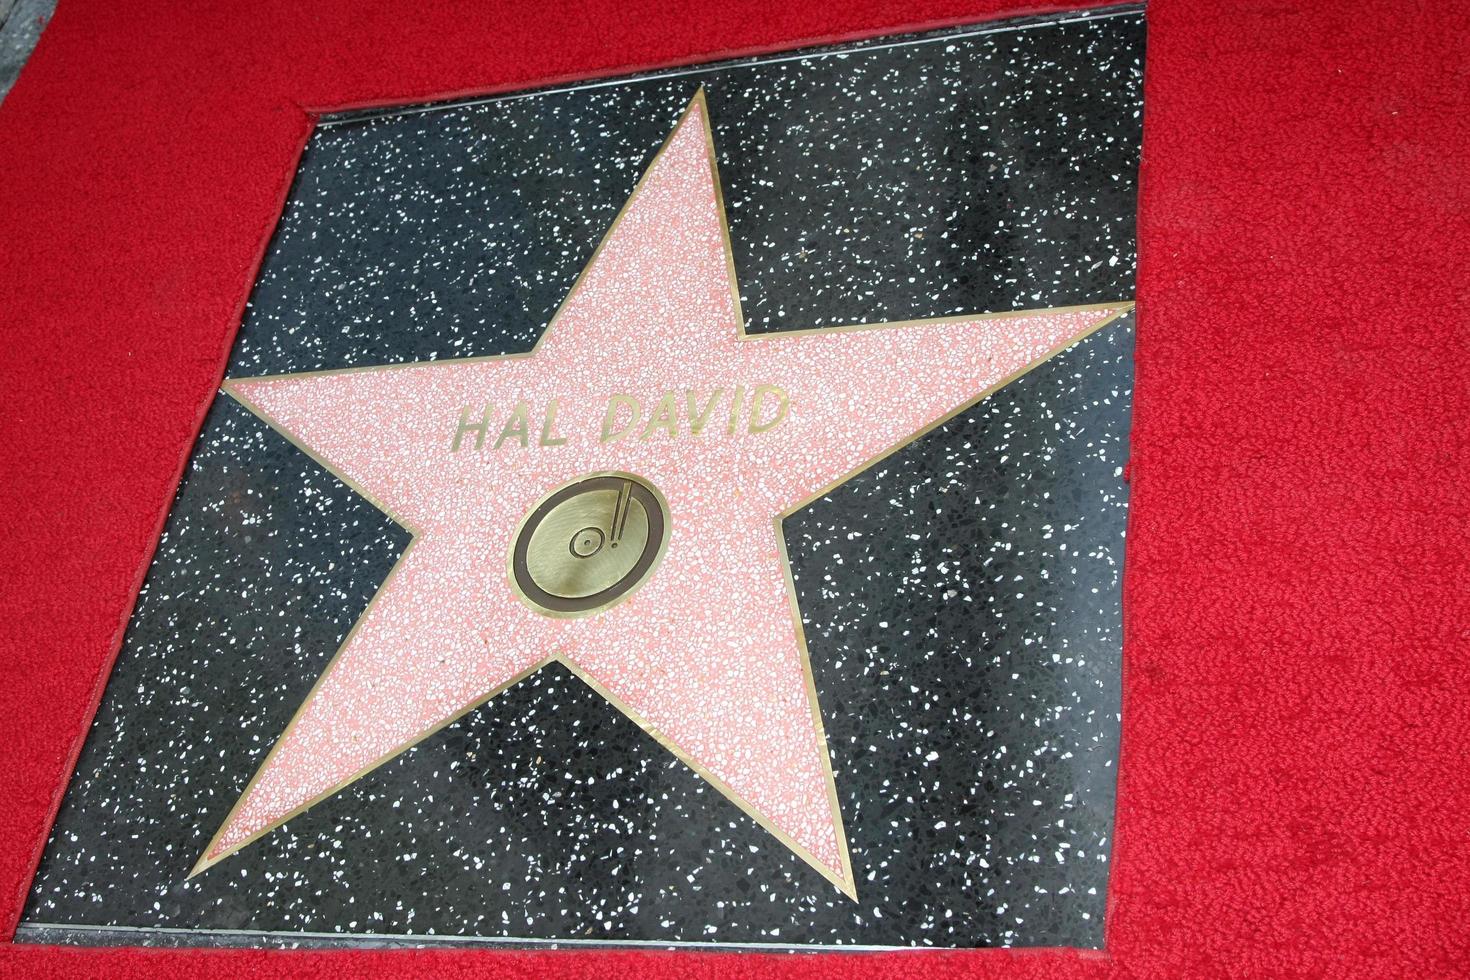 los angeles, 14 okt - hal david wof ster bij de ceremonie om een ster te schenken op de hollywood walk of fame voor hal david bij het musici instituut op 14 oktober 2011 in los angelees, ca foto